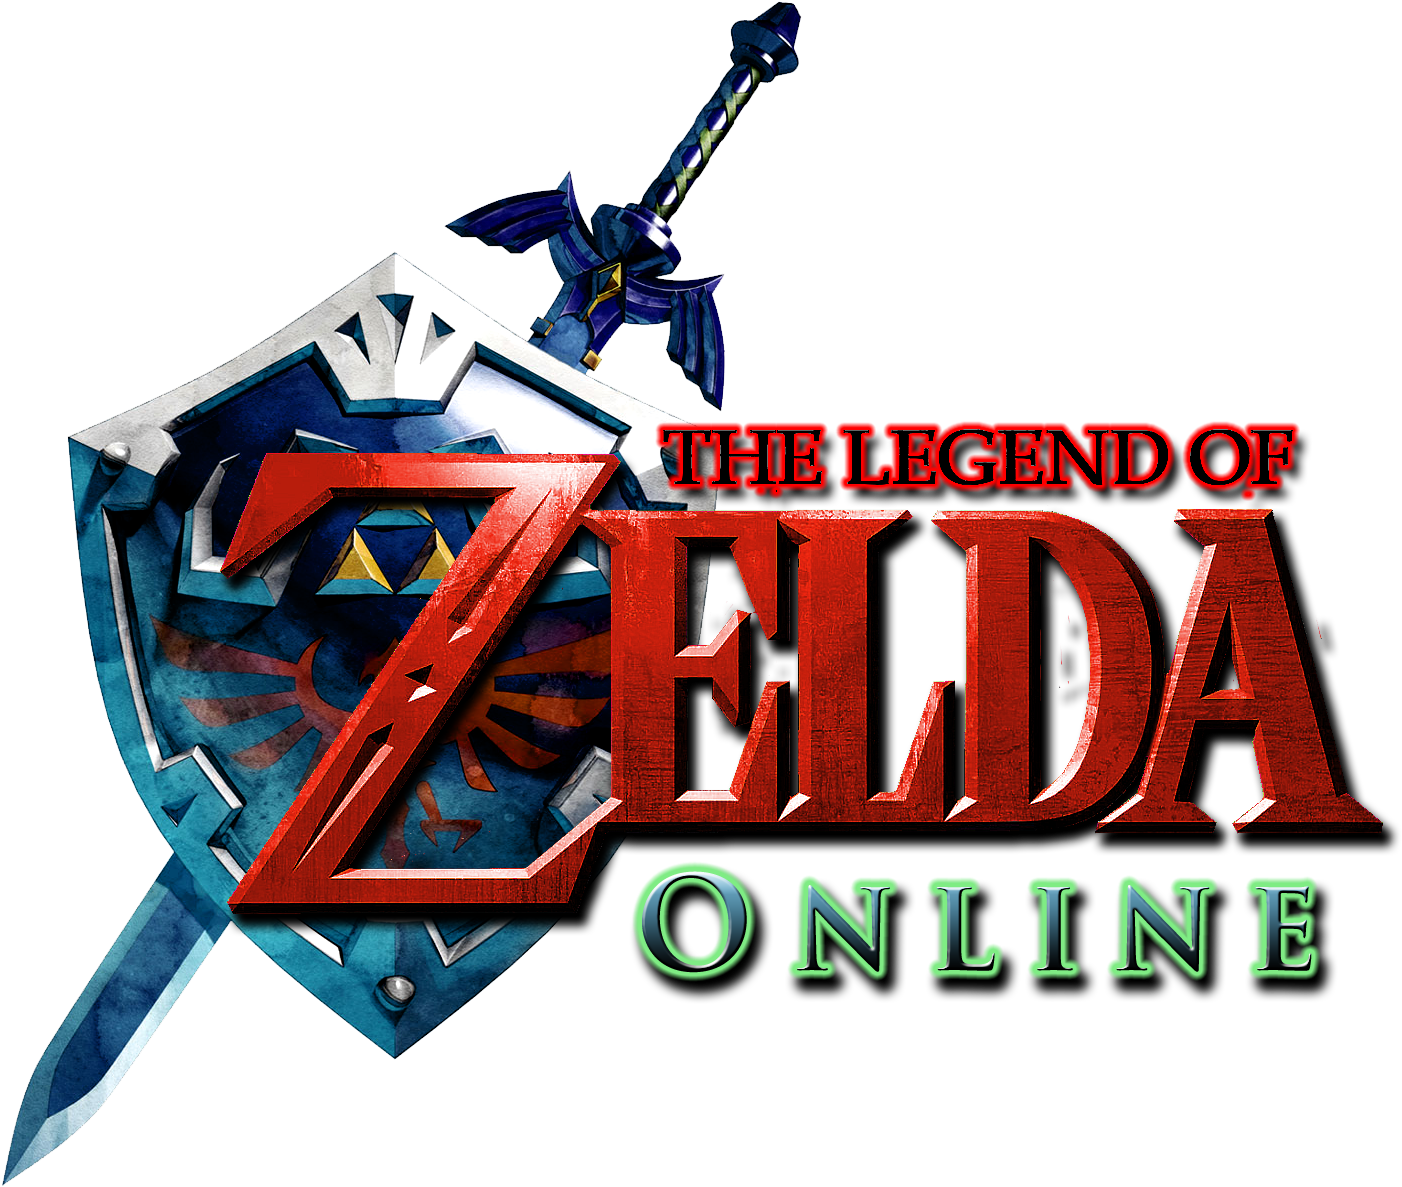 Logo Of The Legend Zelda PNG Image